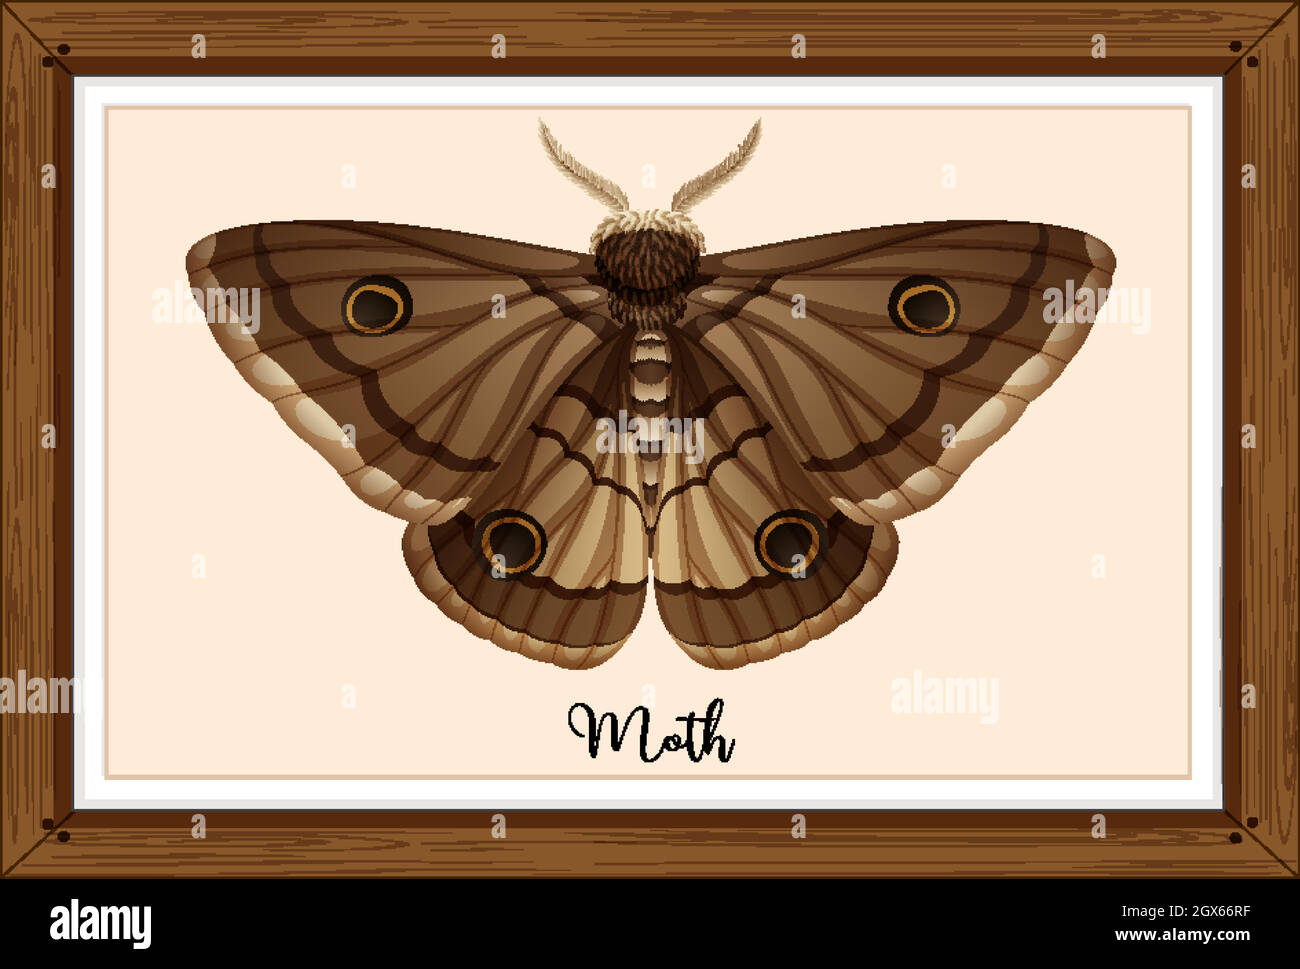 Moth on wooden frame Stock Vector